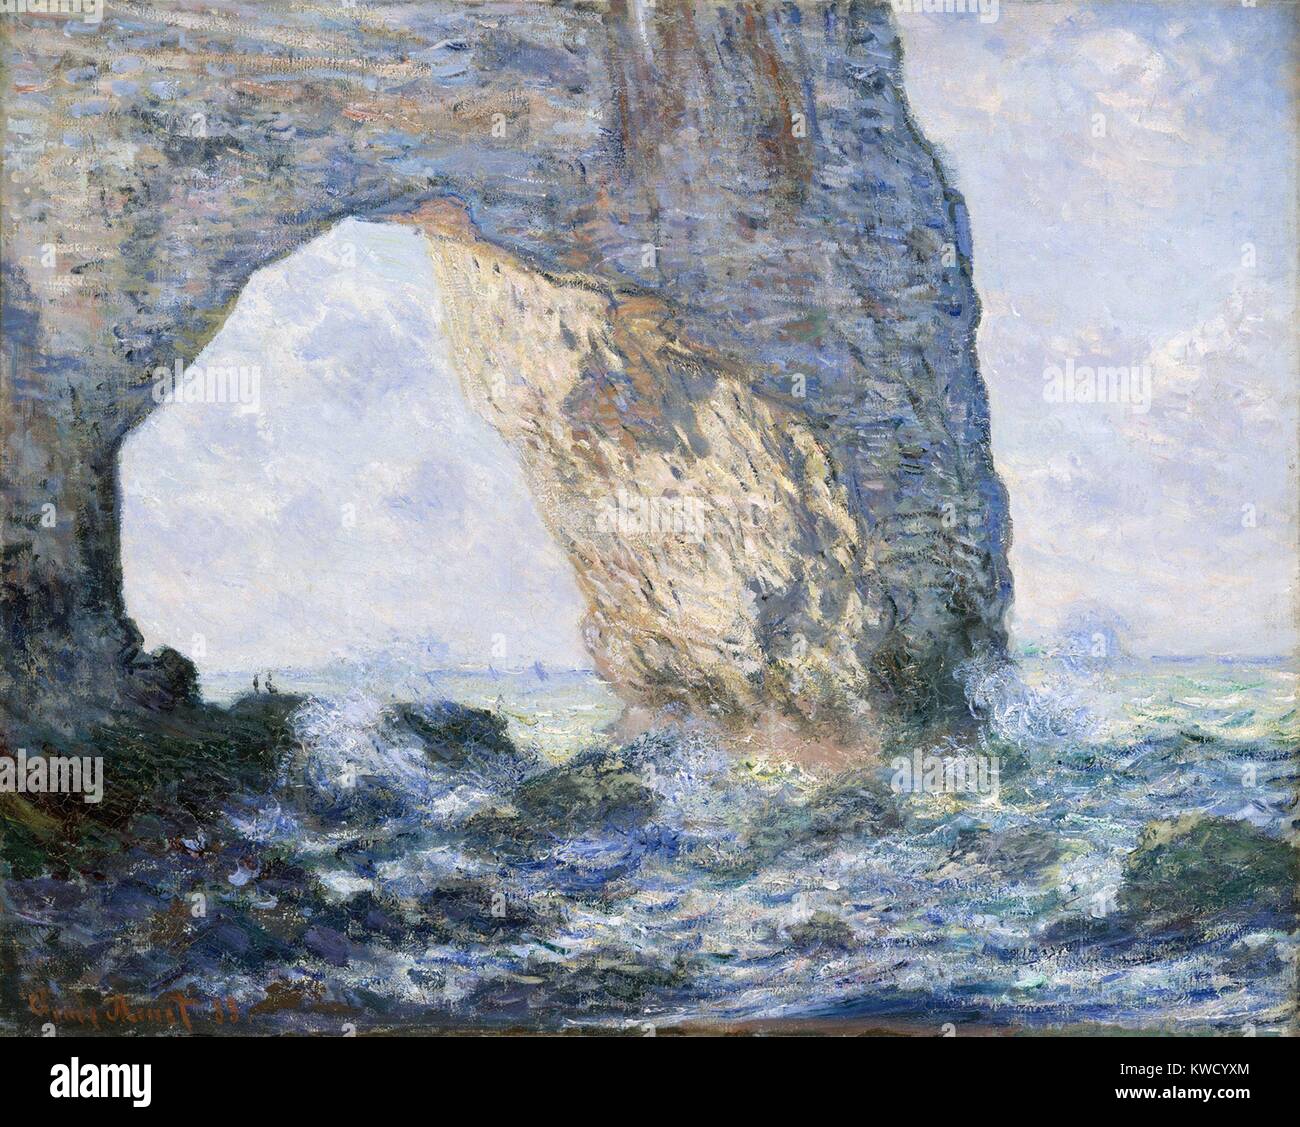 La Manneporte (Etretat), par Claude Monet, 1883, la peinture impressionniste français, huile sur toile. Monet peint la roche solide, la mer, et le ciel en termes de couleur et la luminosité (BSLOC 2017 3 36) Banque D'Images